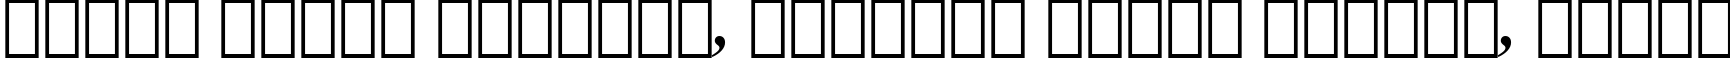 Пример написания шрифтом Dutch 801 Bold Italic BT текста на белорусском